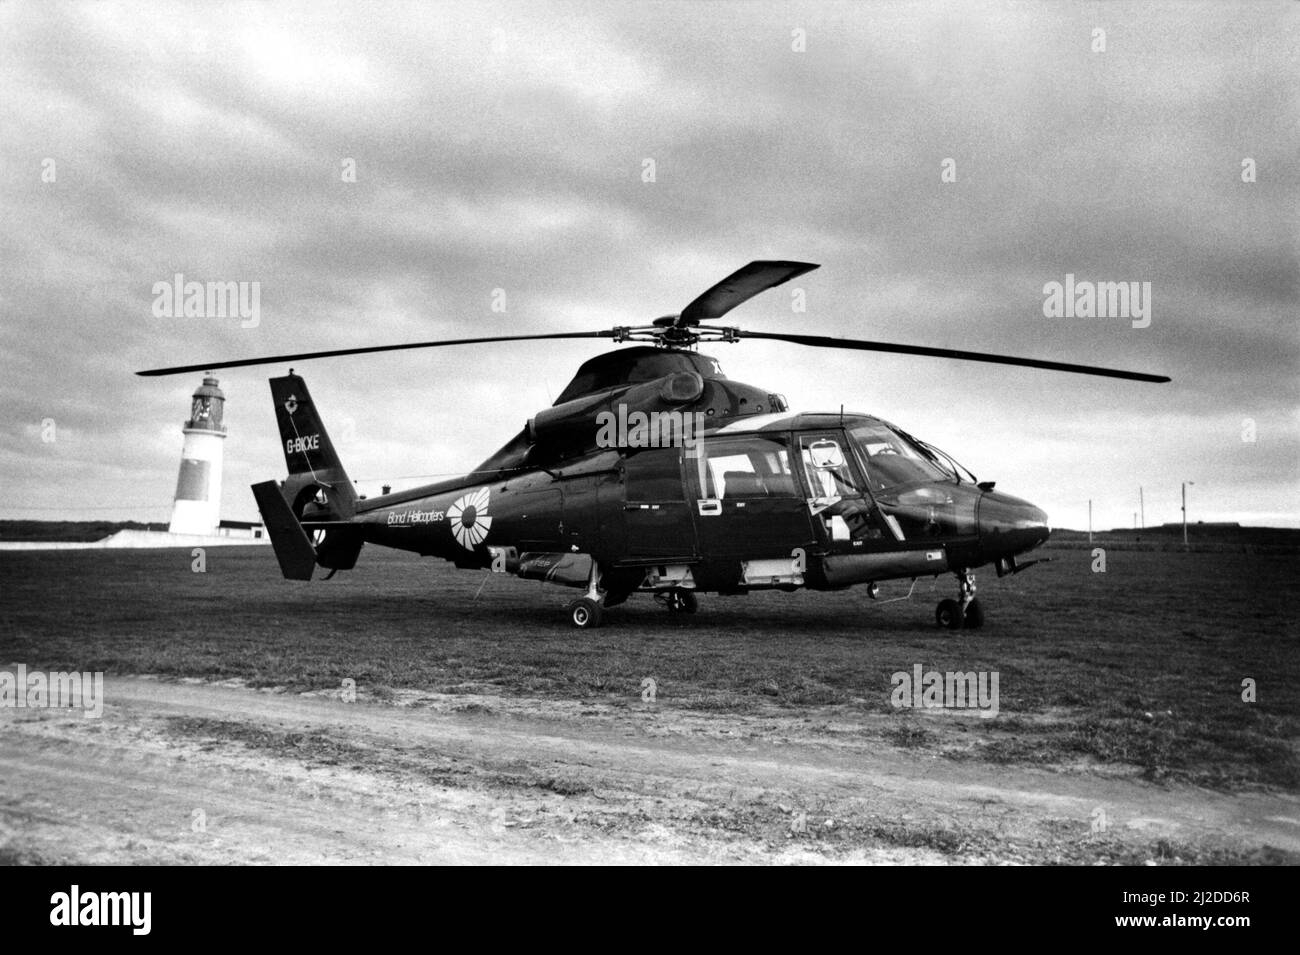 Ein Hubschrauber der Aerospatiale Dauphin II (Eurocopter Dauphin), aufgenommen in der Nähe des Souter Lighthouse auf den Klippen von Marsden, South Shields. Das von Bond Helicopters betriebene Flugzeug hatte Ölbohrer befördert, als es nach fast leerdem Treibstoff eine dramatische Landung durchführen musste. Der Pilot schaffte es, mit nur 15 Fuß zu ersparen, als die acht verängstigten Passagiere ansahen. 28/03/1985 Stockfoto